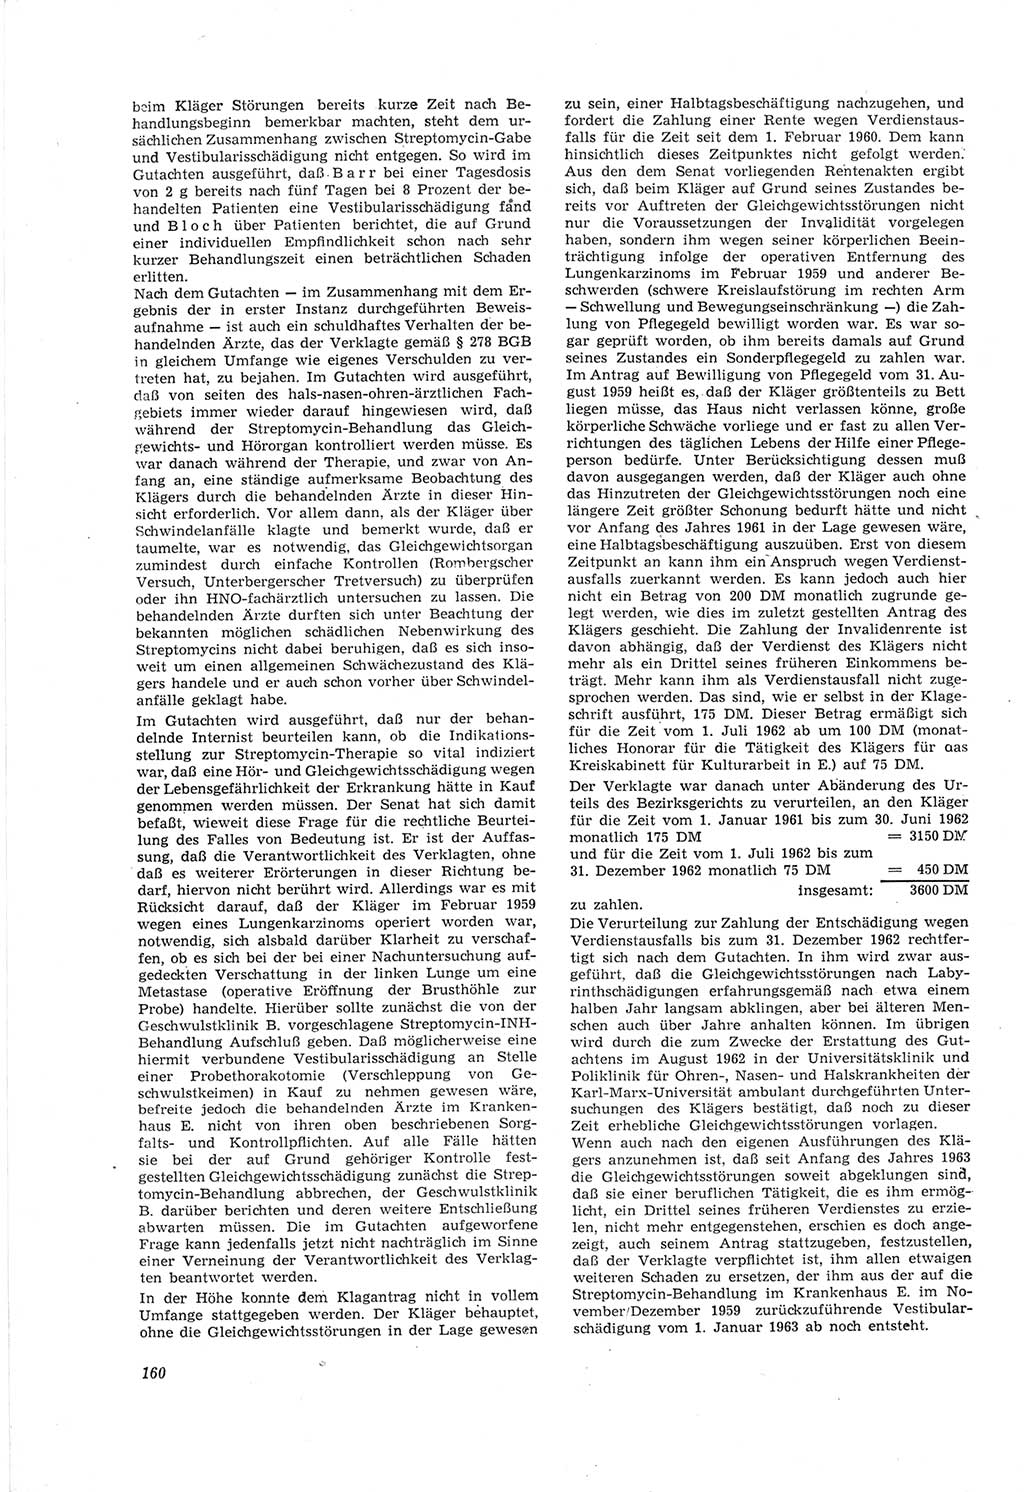 Neue Justiz (NJ), Zeitschrift für Recht und Rechtswissenschaft [Deutsche Demokratische Republik (DDR)], 18. Jahrgang 1964, Seite 160 (NJ DDR 1964, S. 160)